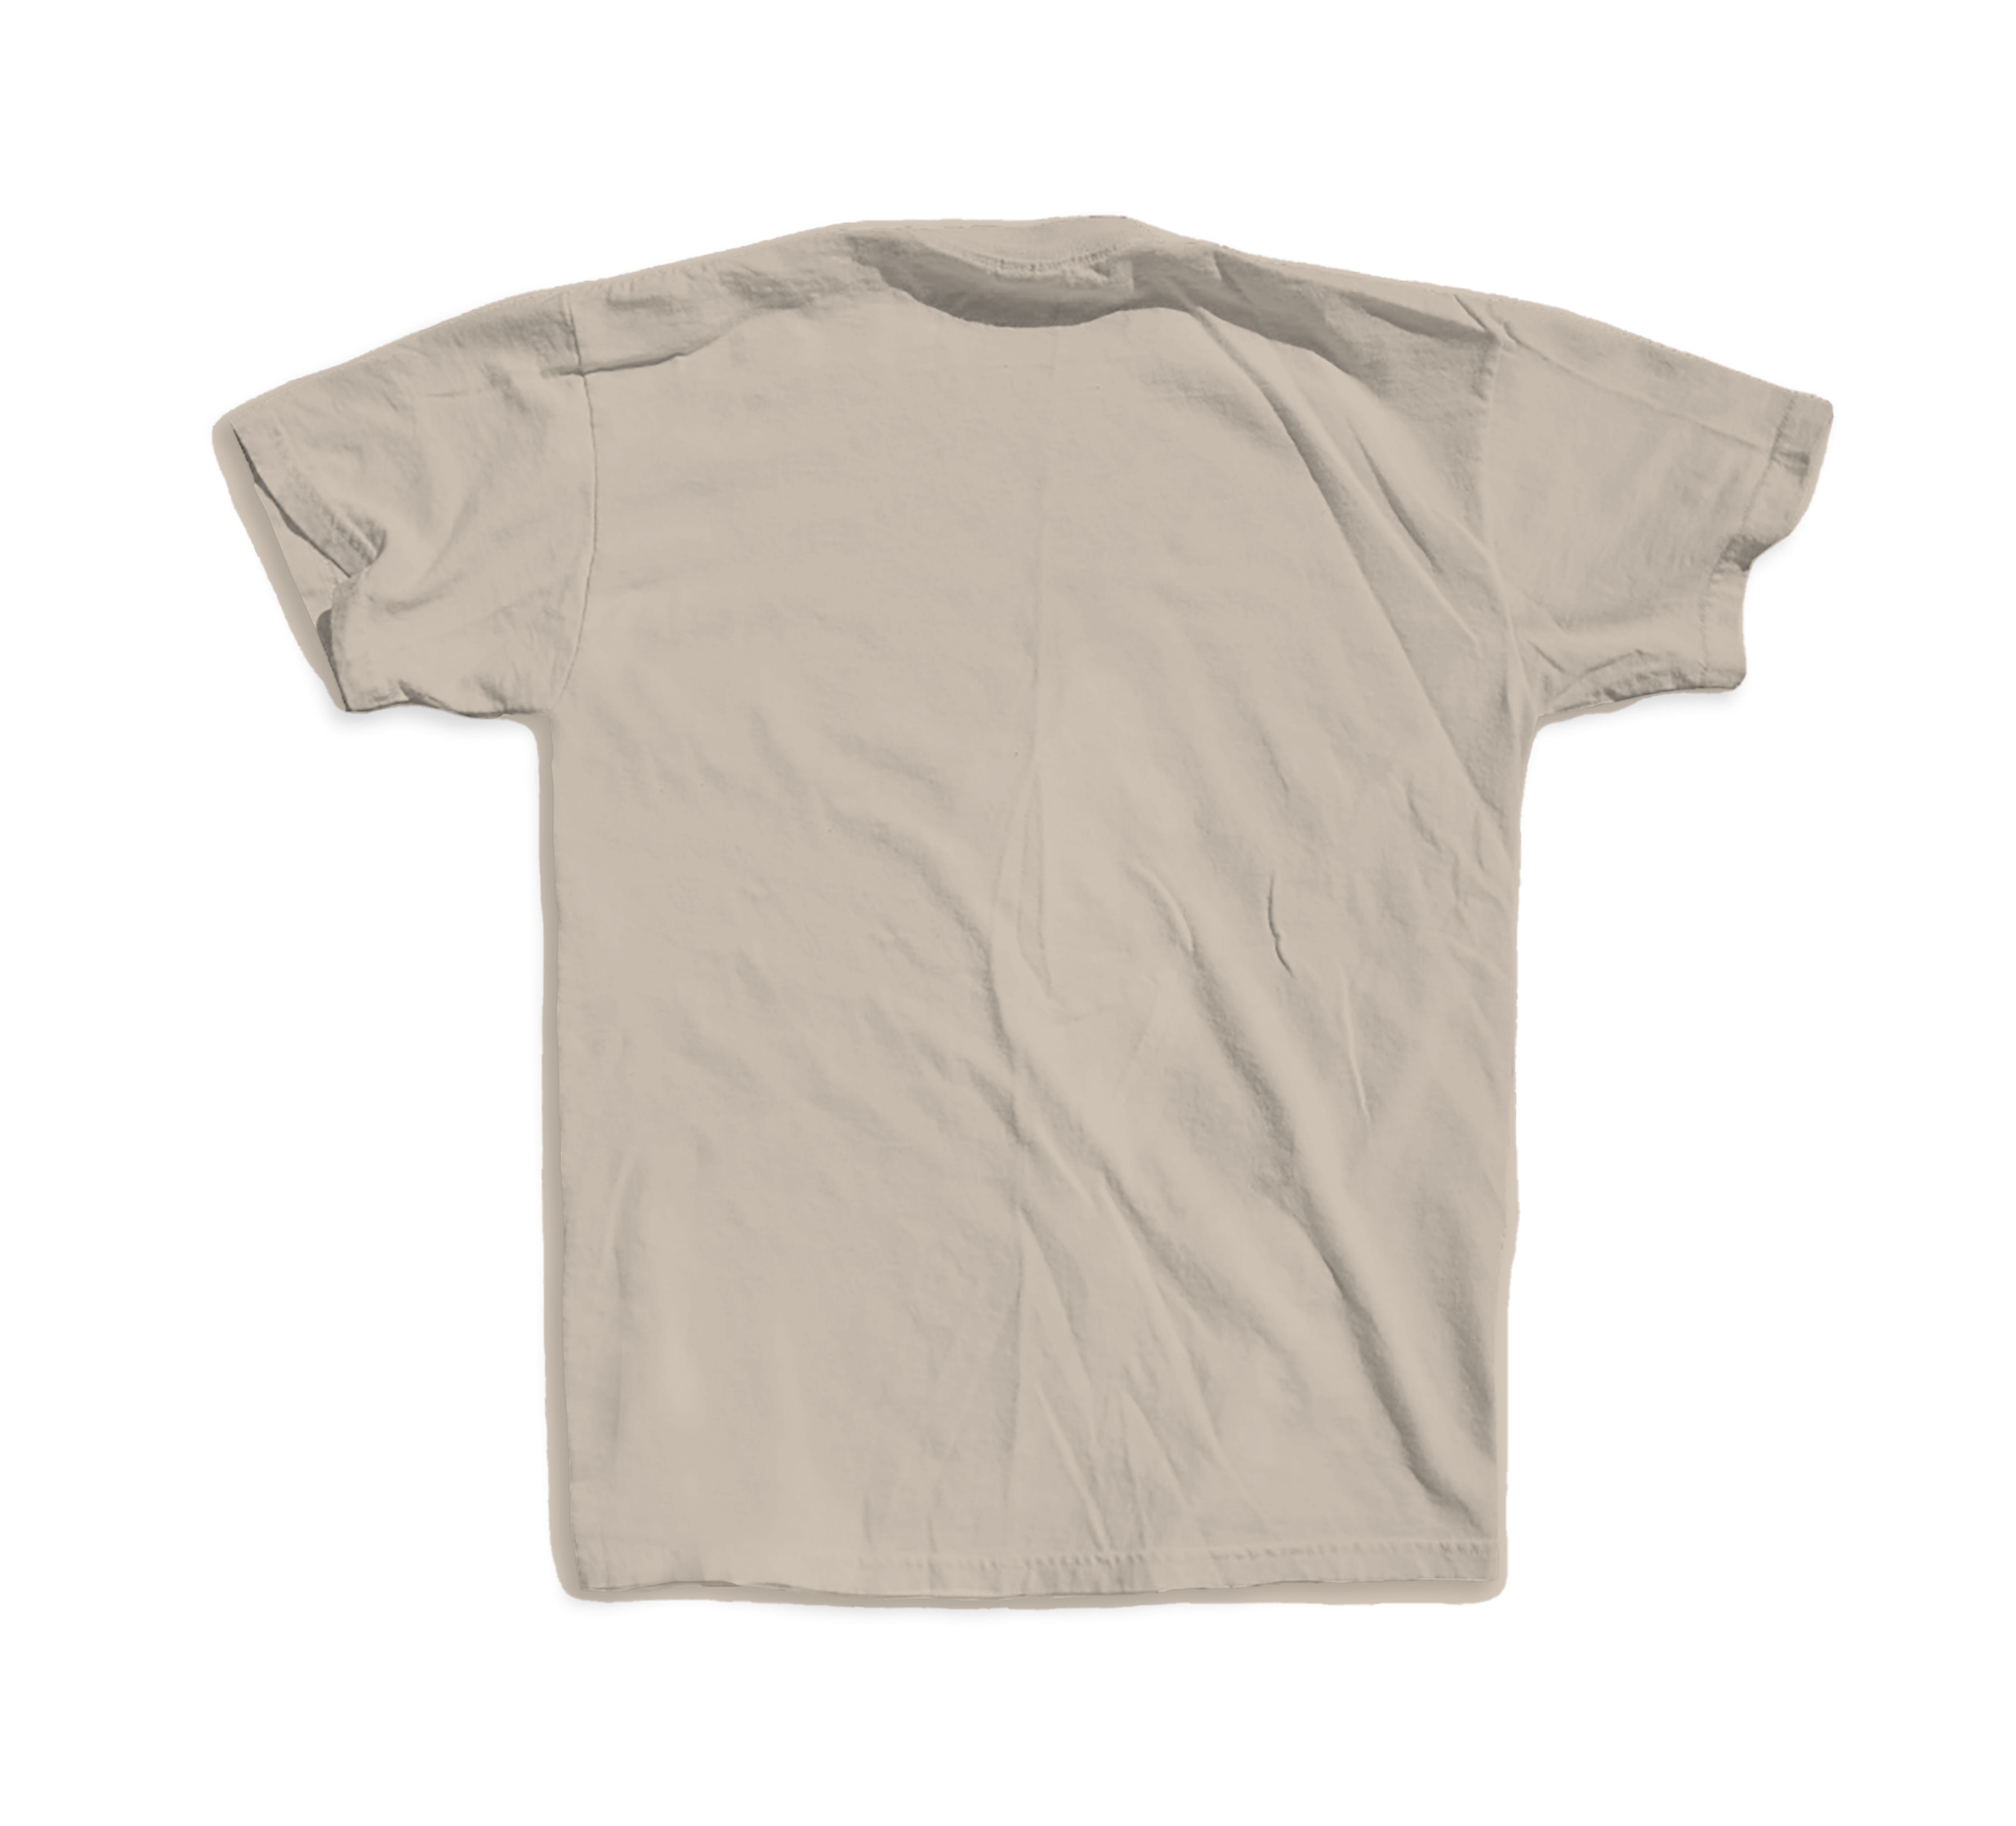 DIVERSPACE Planet T-shirt- Beige